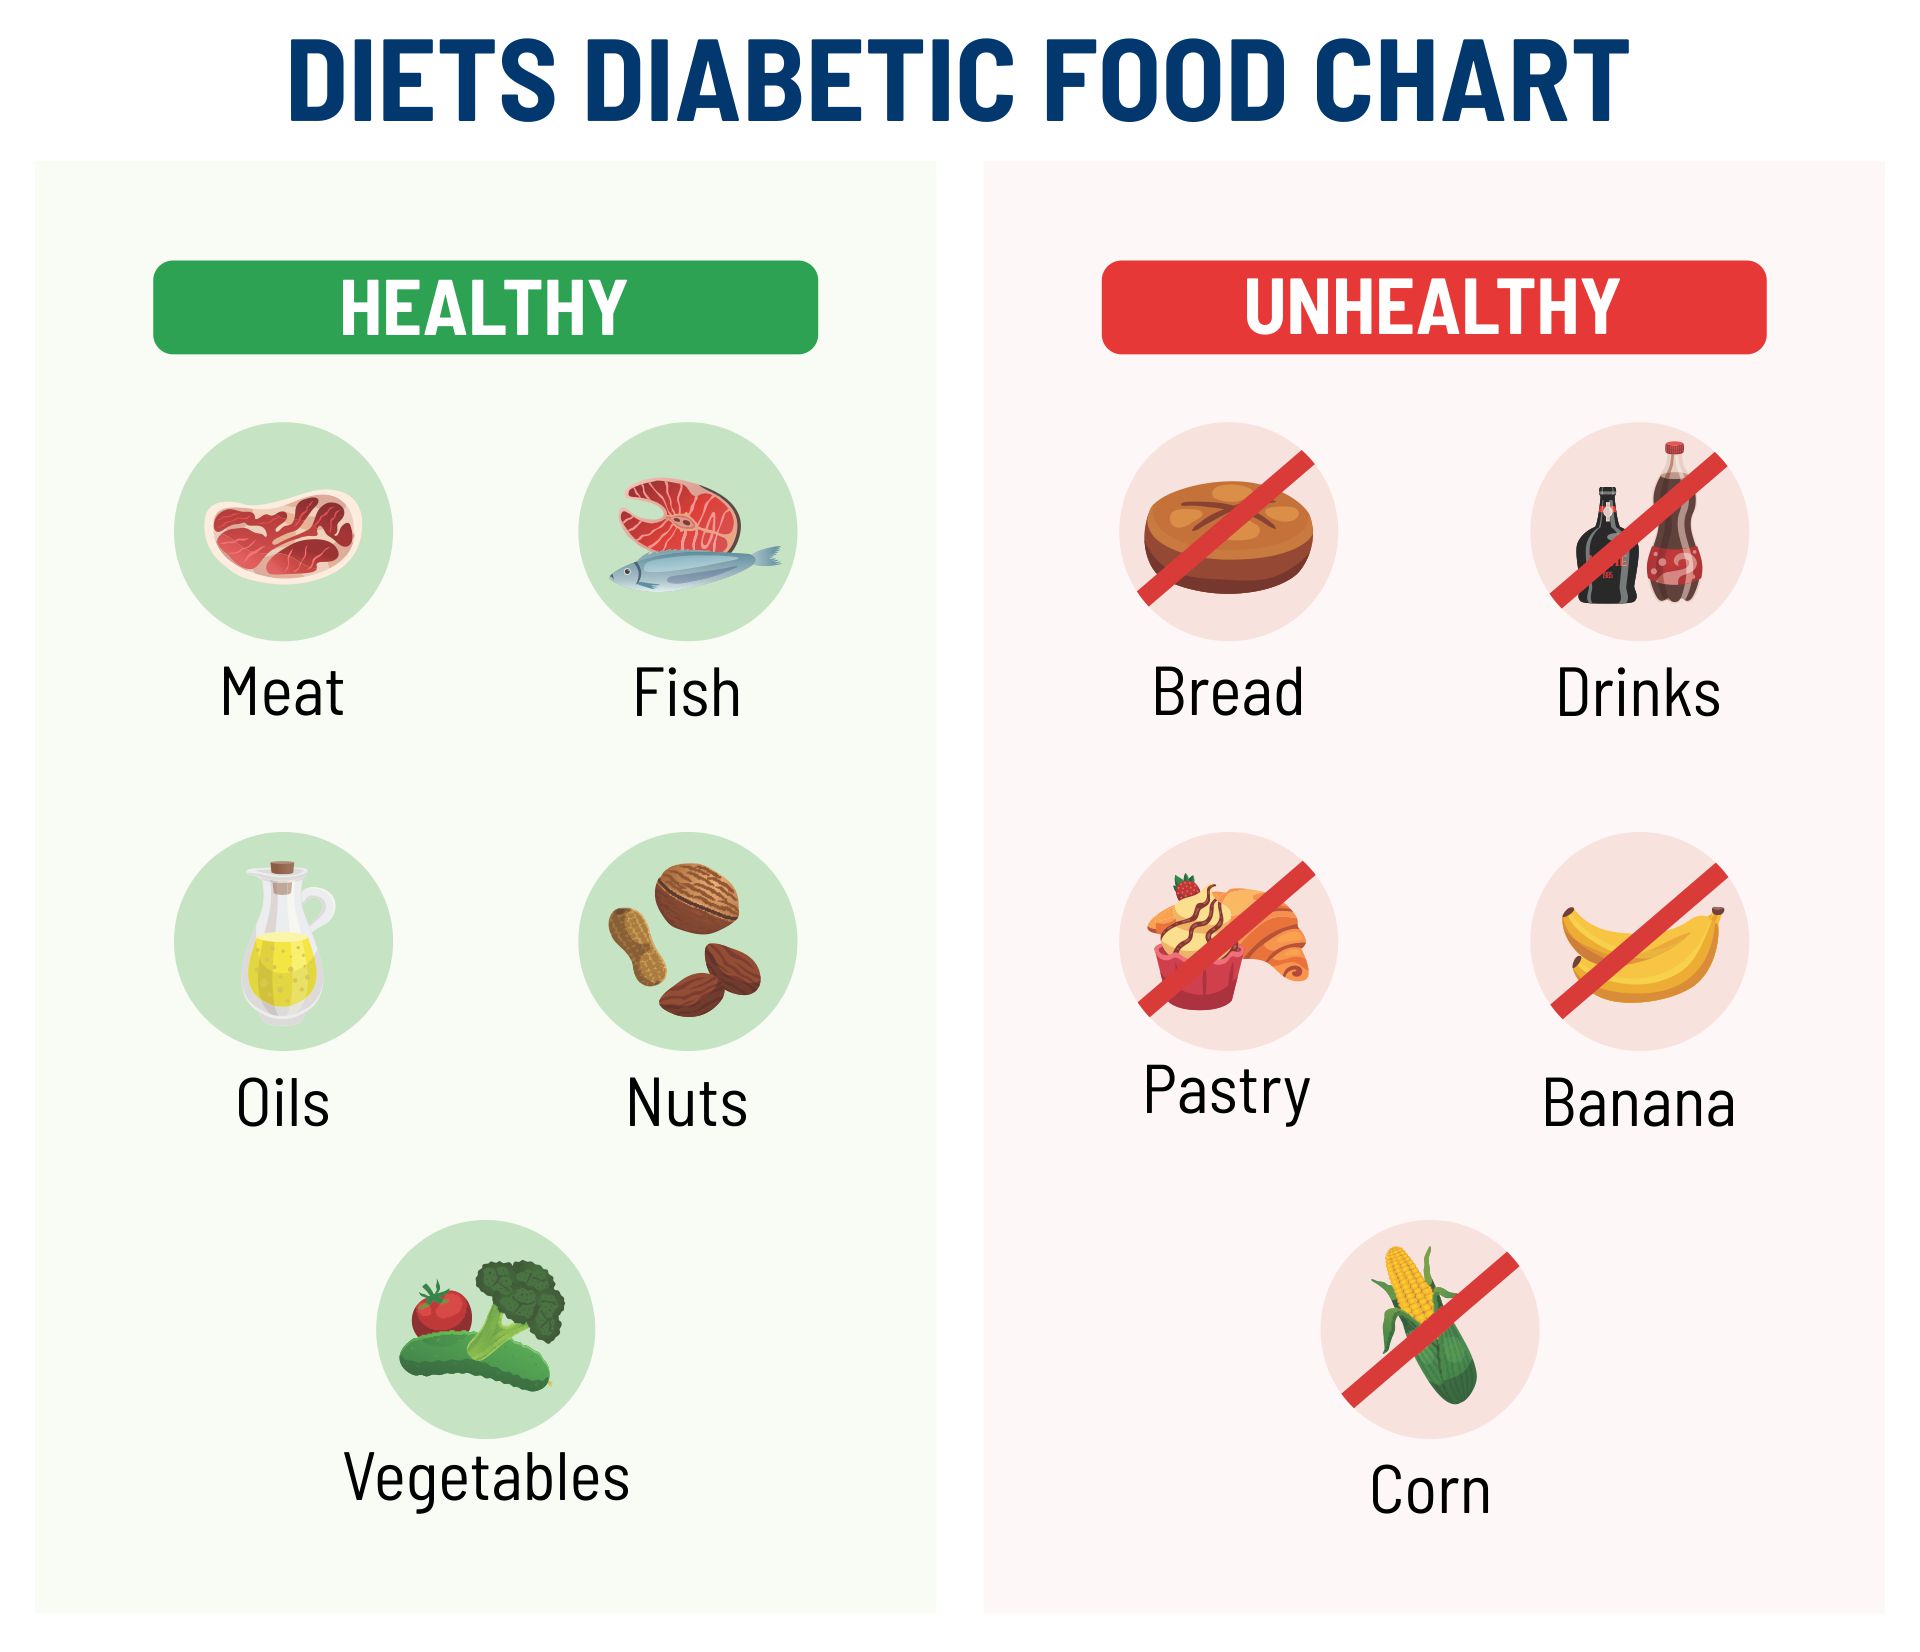 5 Best Images of Diabetes Printable Chart Food Healthy - Diabetic Food